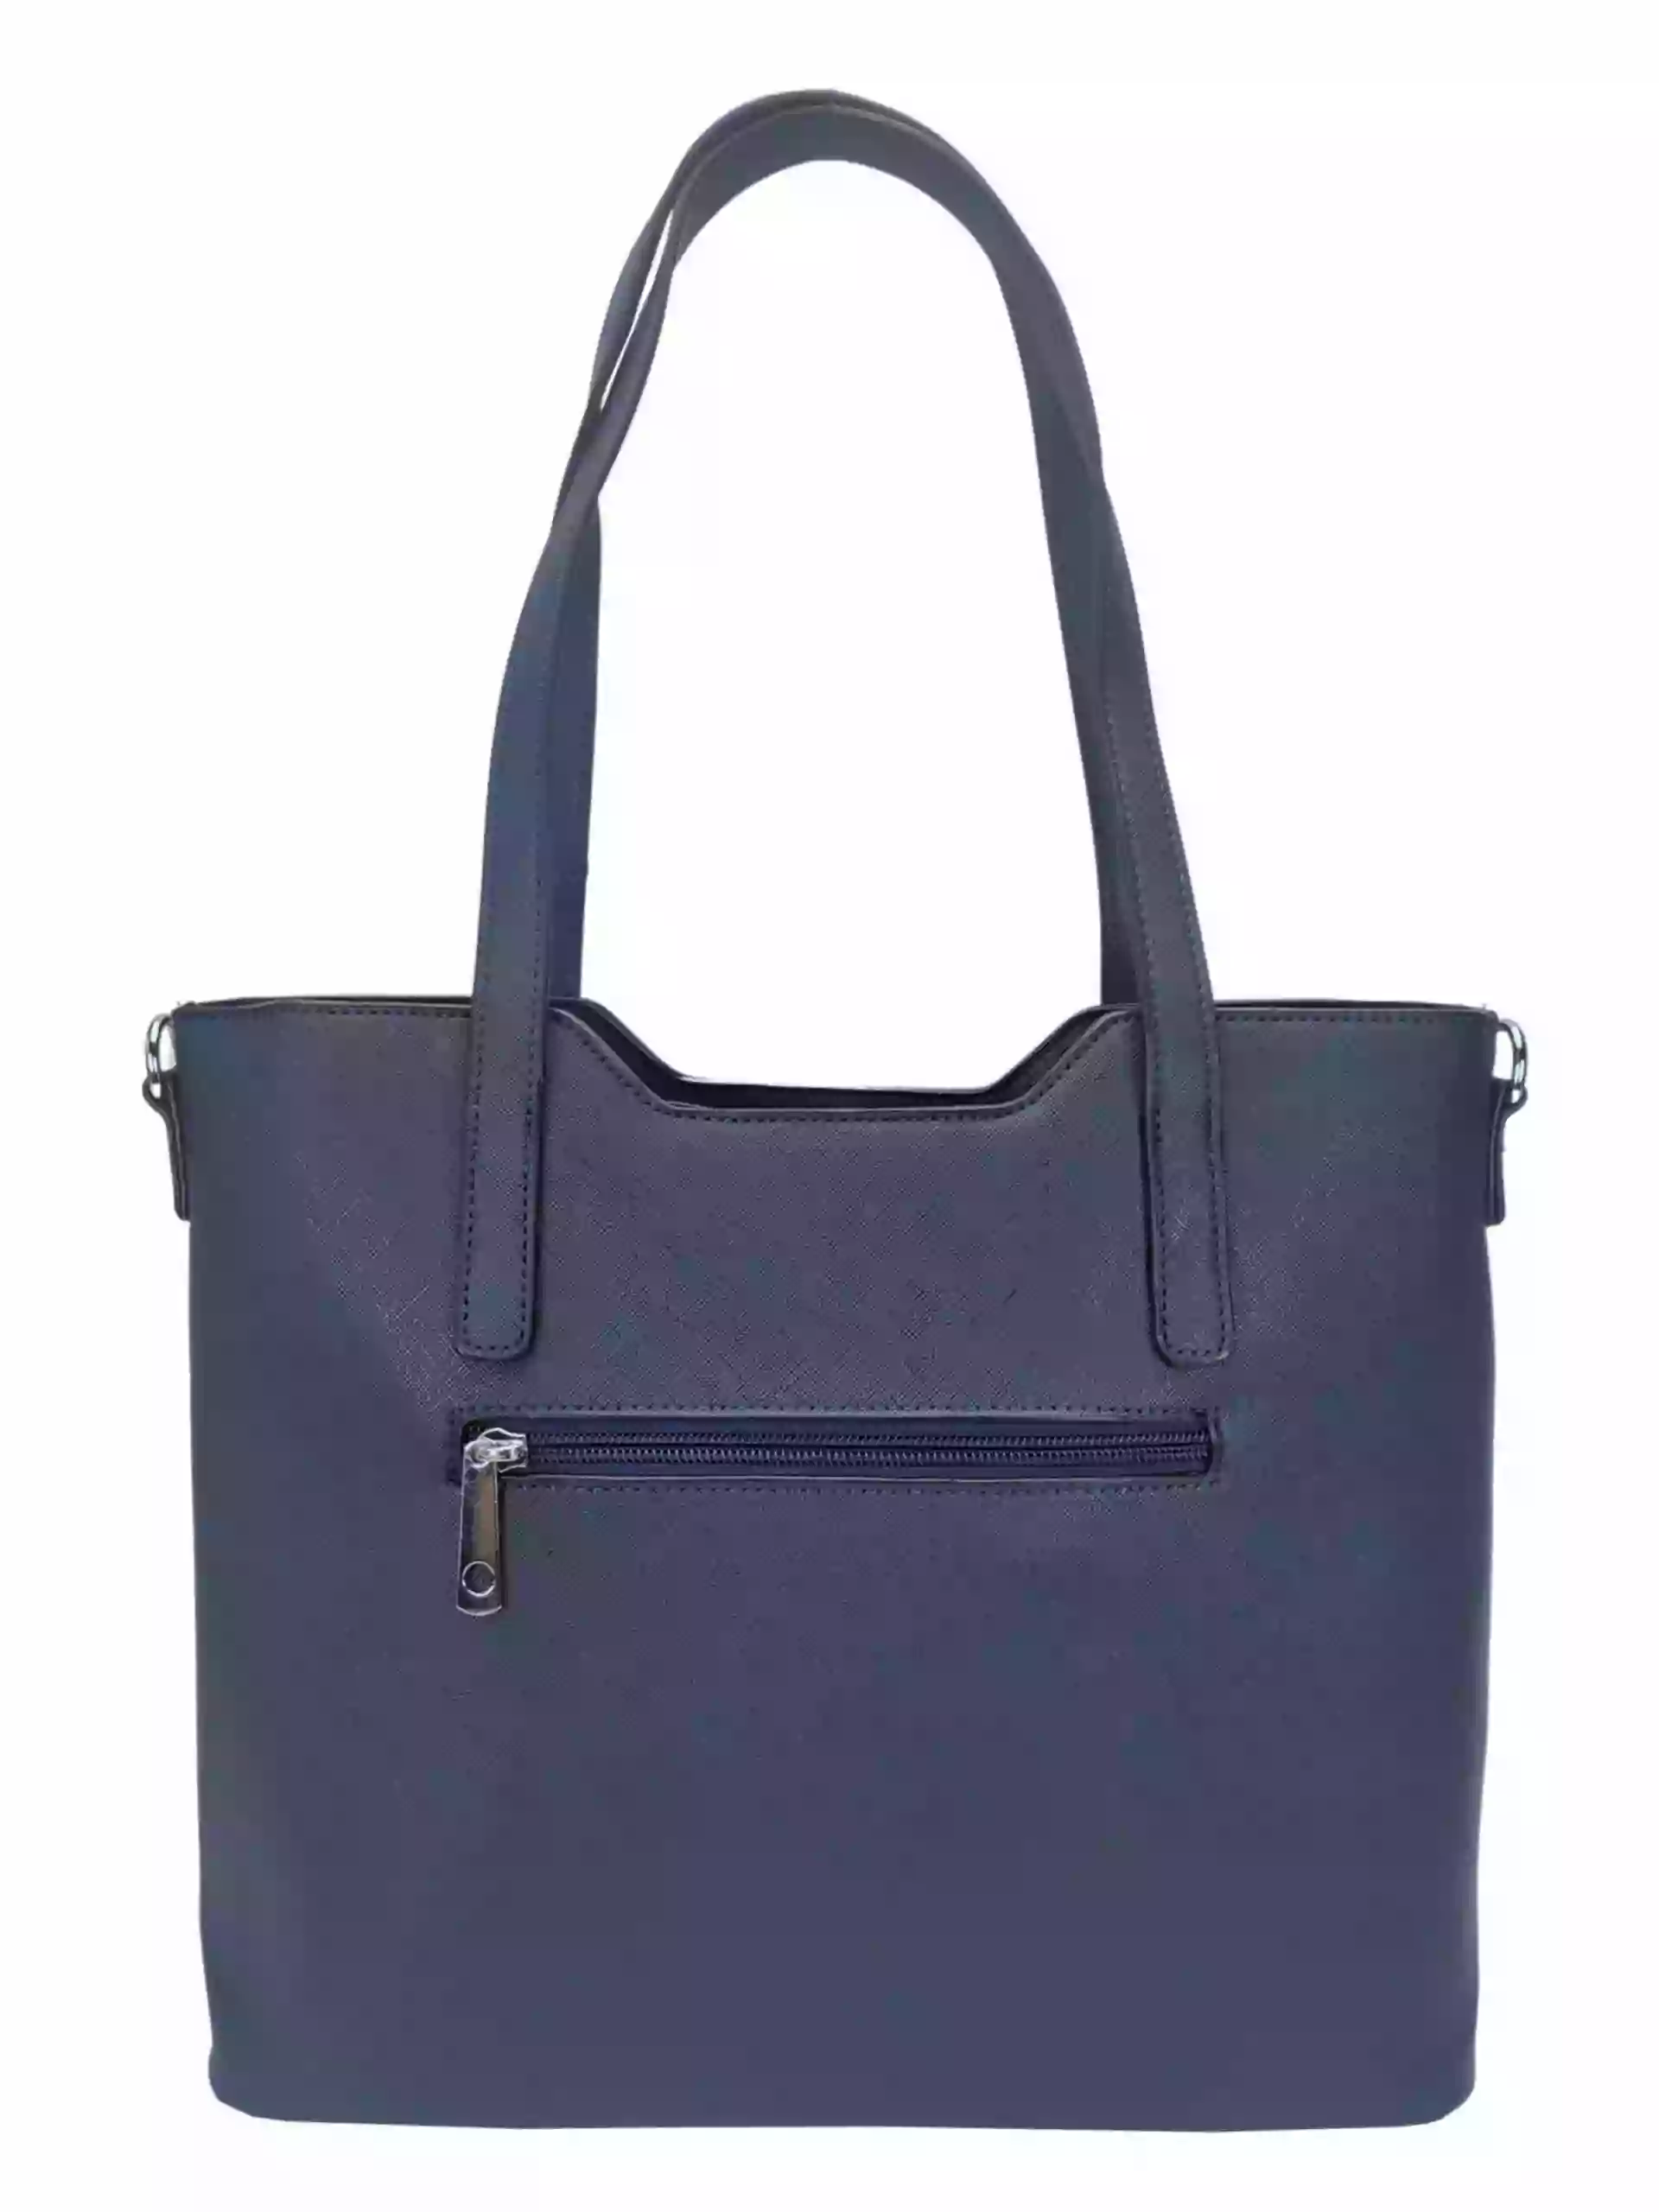 Tmavě modrá kabelka do ruky se stříbrnými detaily, Tapple, H20801, zadní strana kabelky do ruky